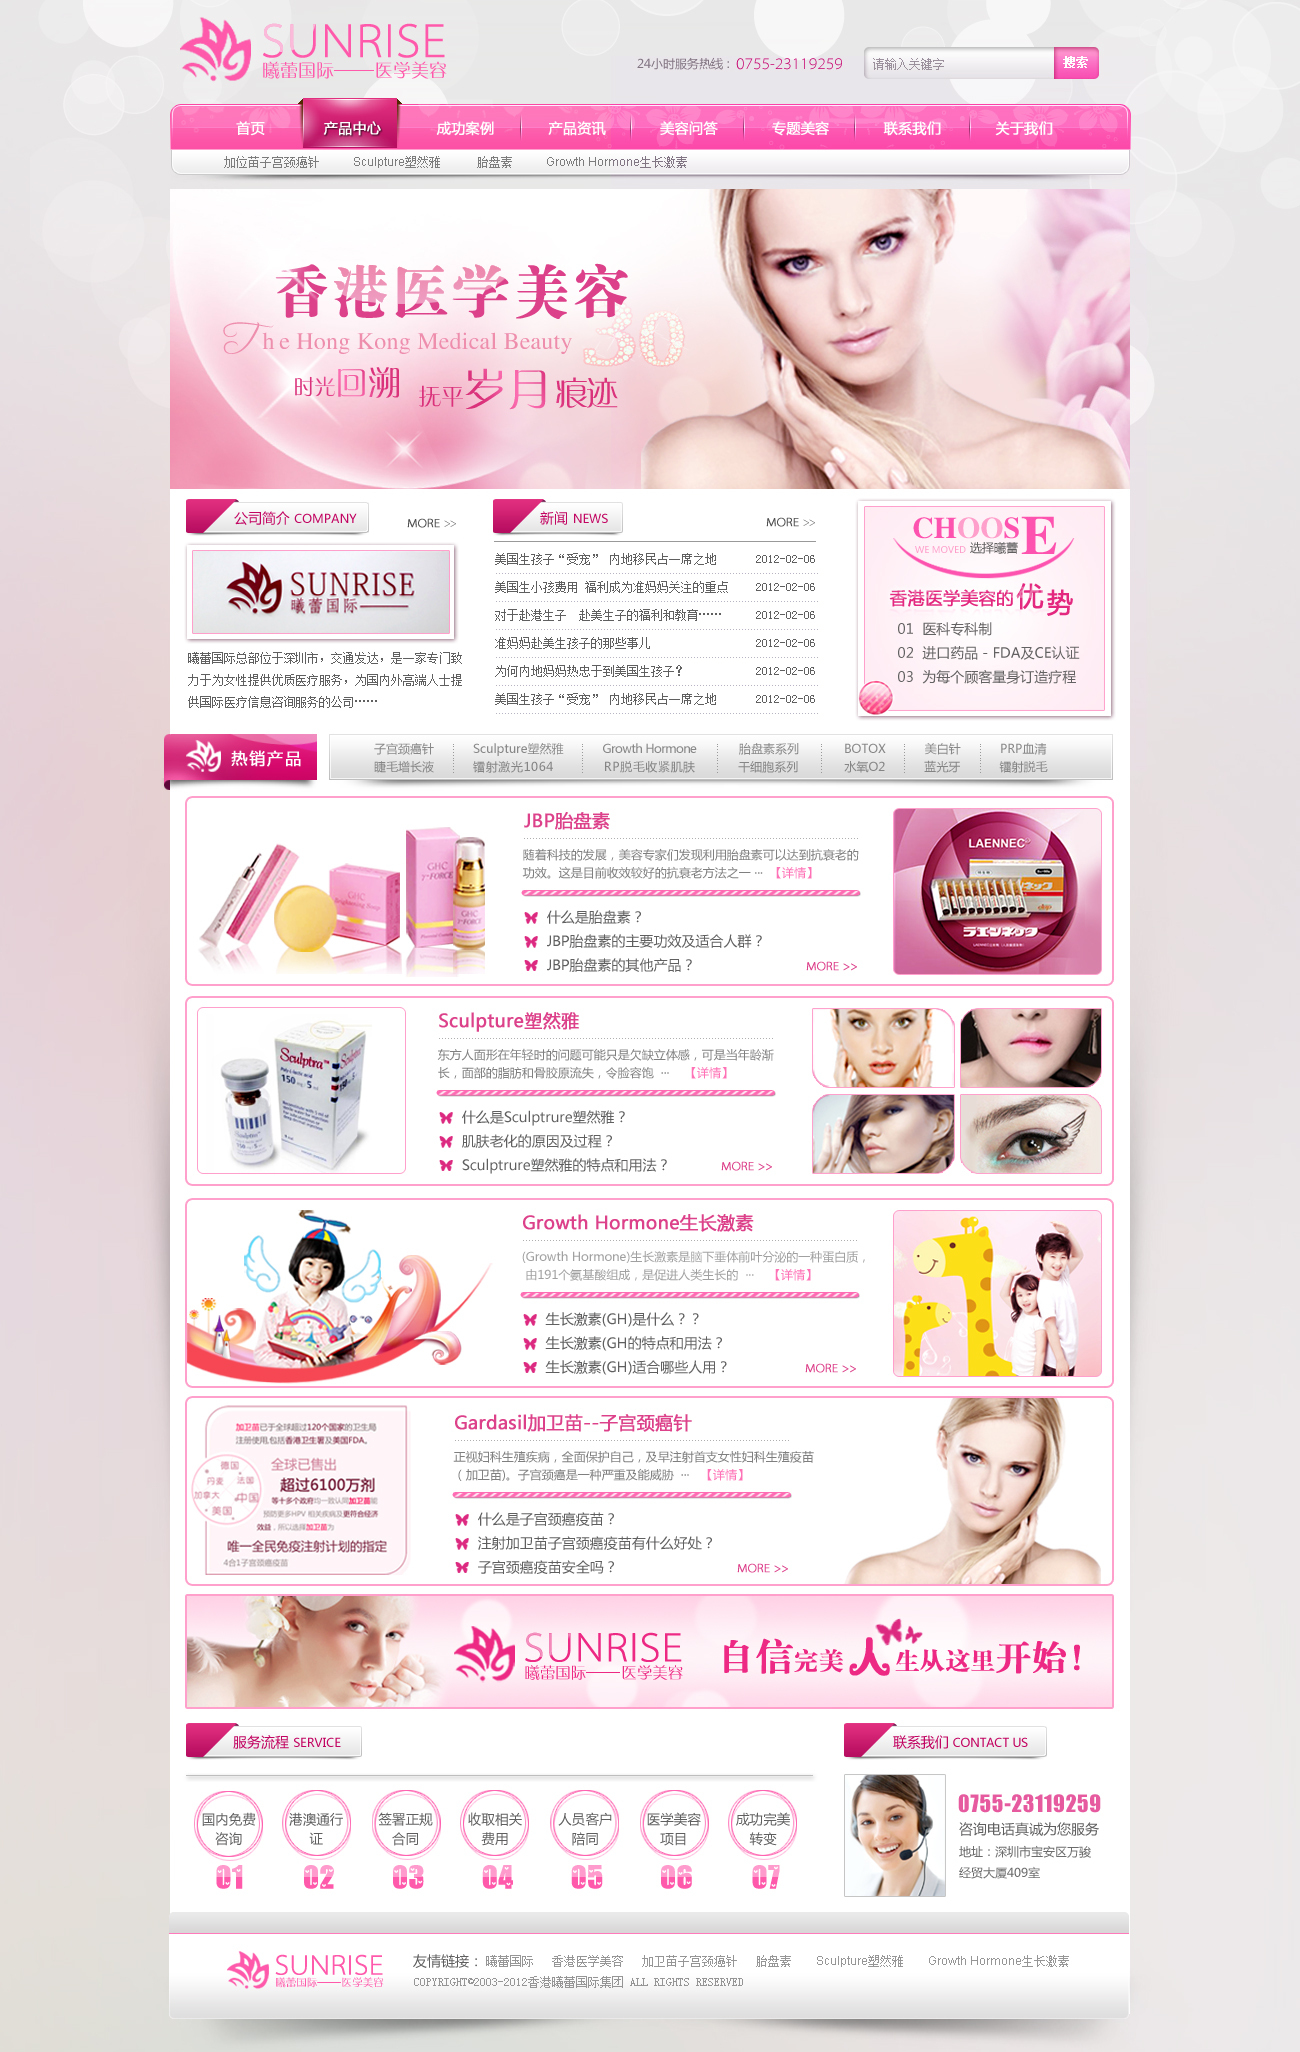 醫療美容公司網站設計圖0